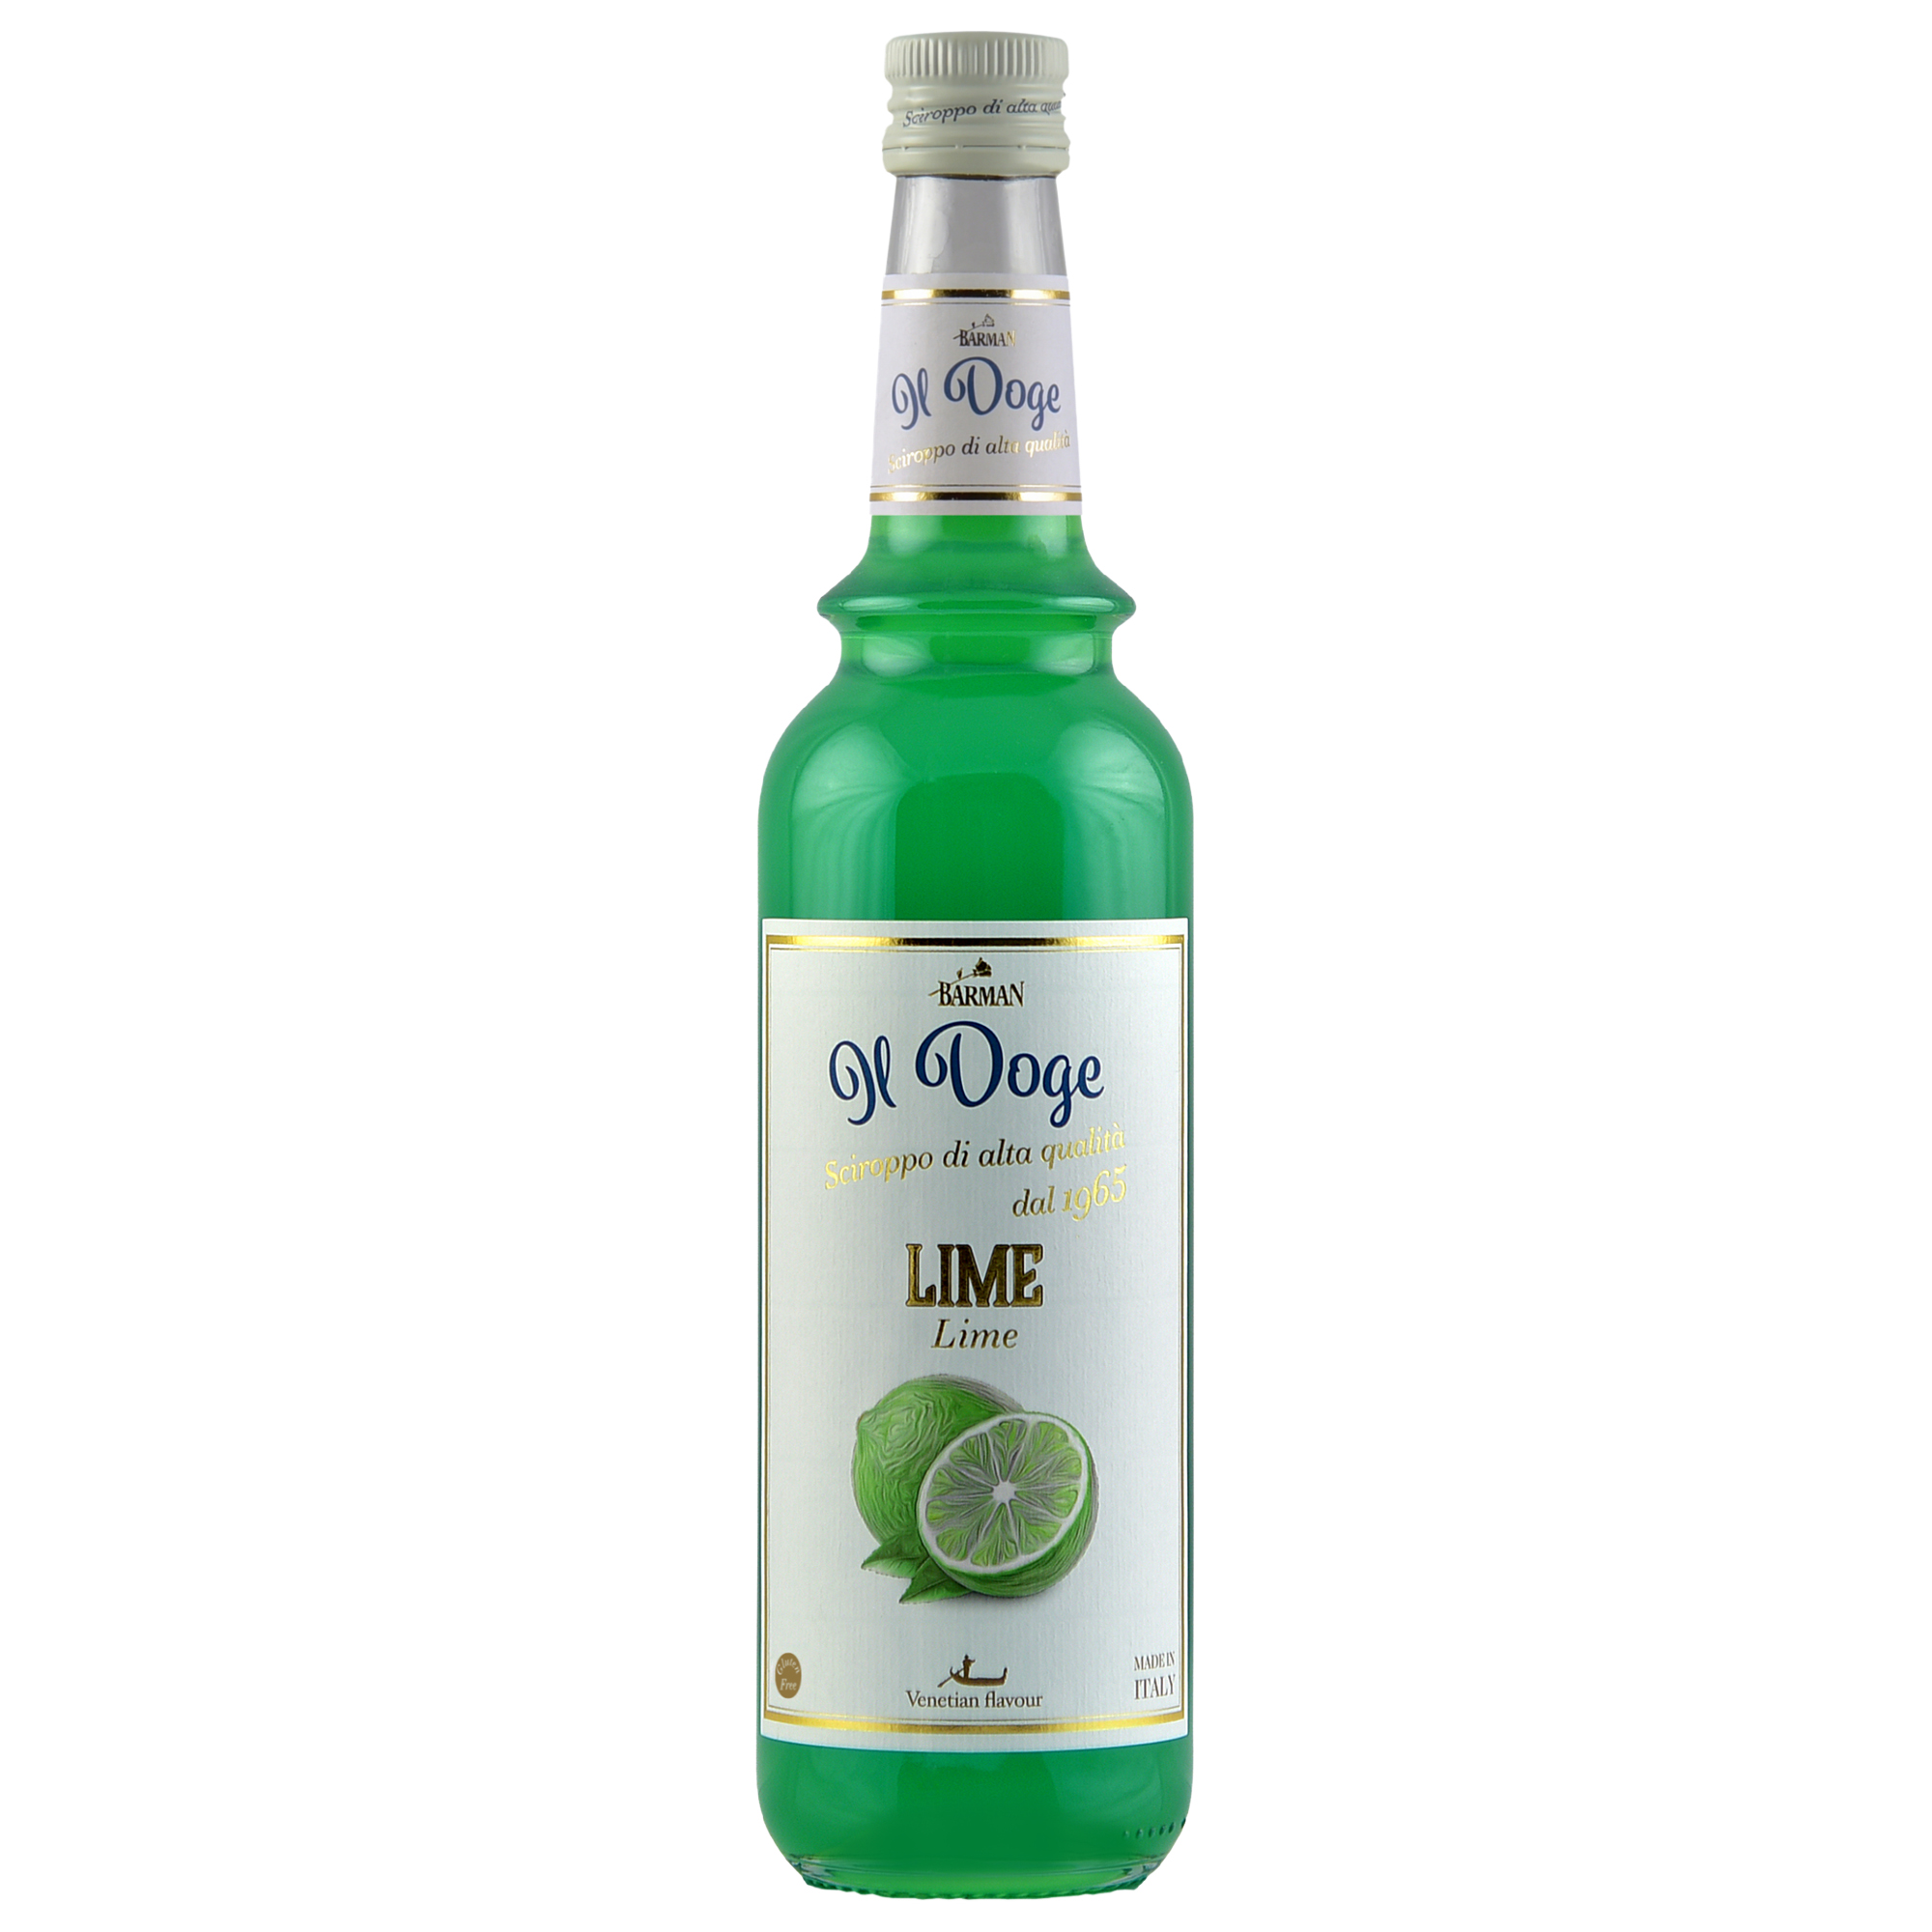 Il Doge Sirup Limette - Lime / 0,7 ltr. Alkoholfrei / Glutenfrei / Halal